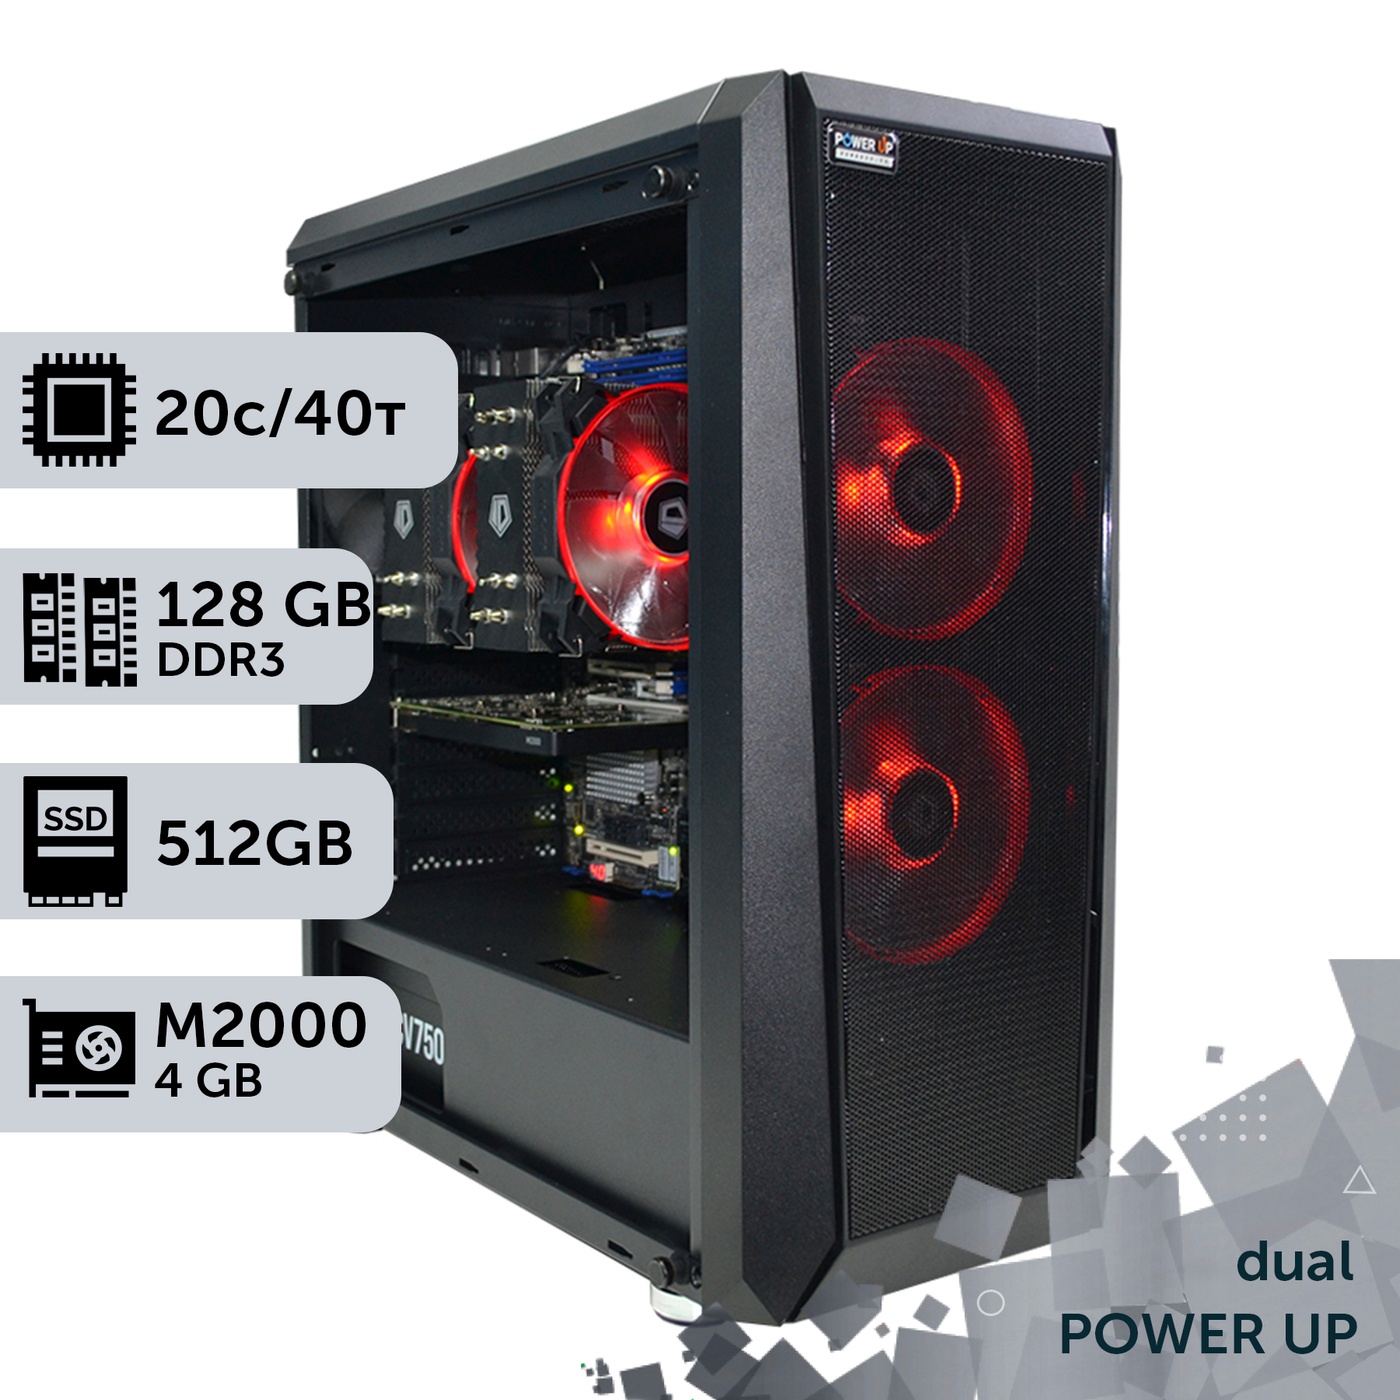 Двухпроцессорная рабочая станция PowerUp #163 Xeon E5 2670 v2 x2/128 GB/HDD 2 TB/SSD 512GB/NVIDIA Quadro M2000 4GB